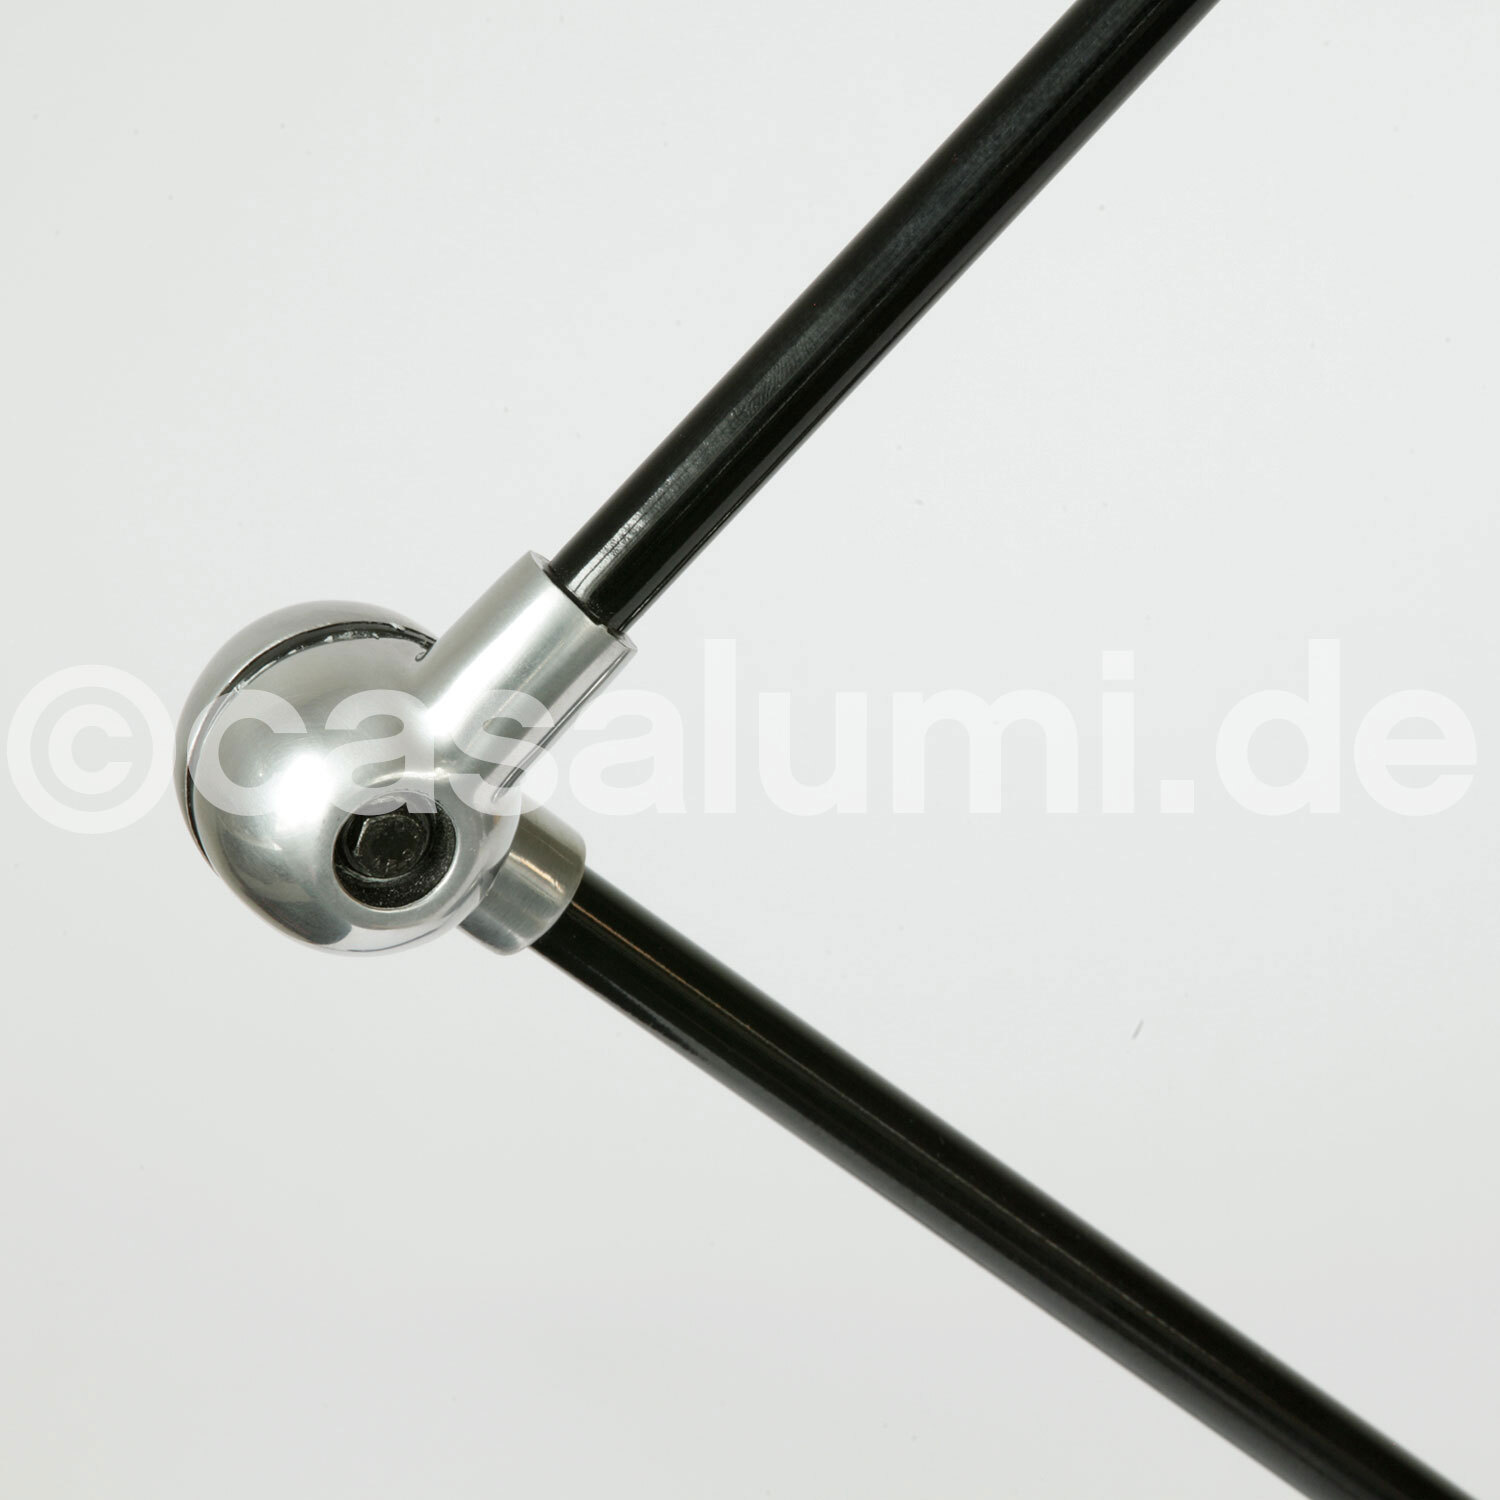 Klemm-Lampe SIGNAL für Tischplatten und Regale: RAL-Farbe glänzend (hier Graphitschwarz) + Stahl poliert